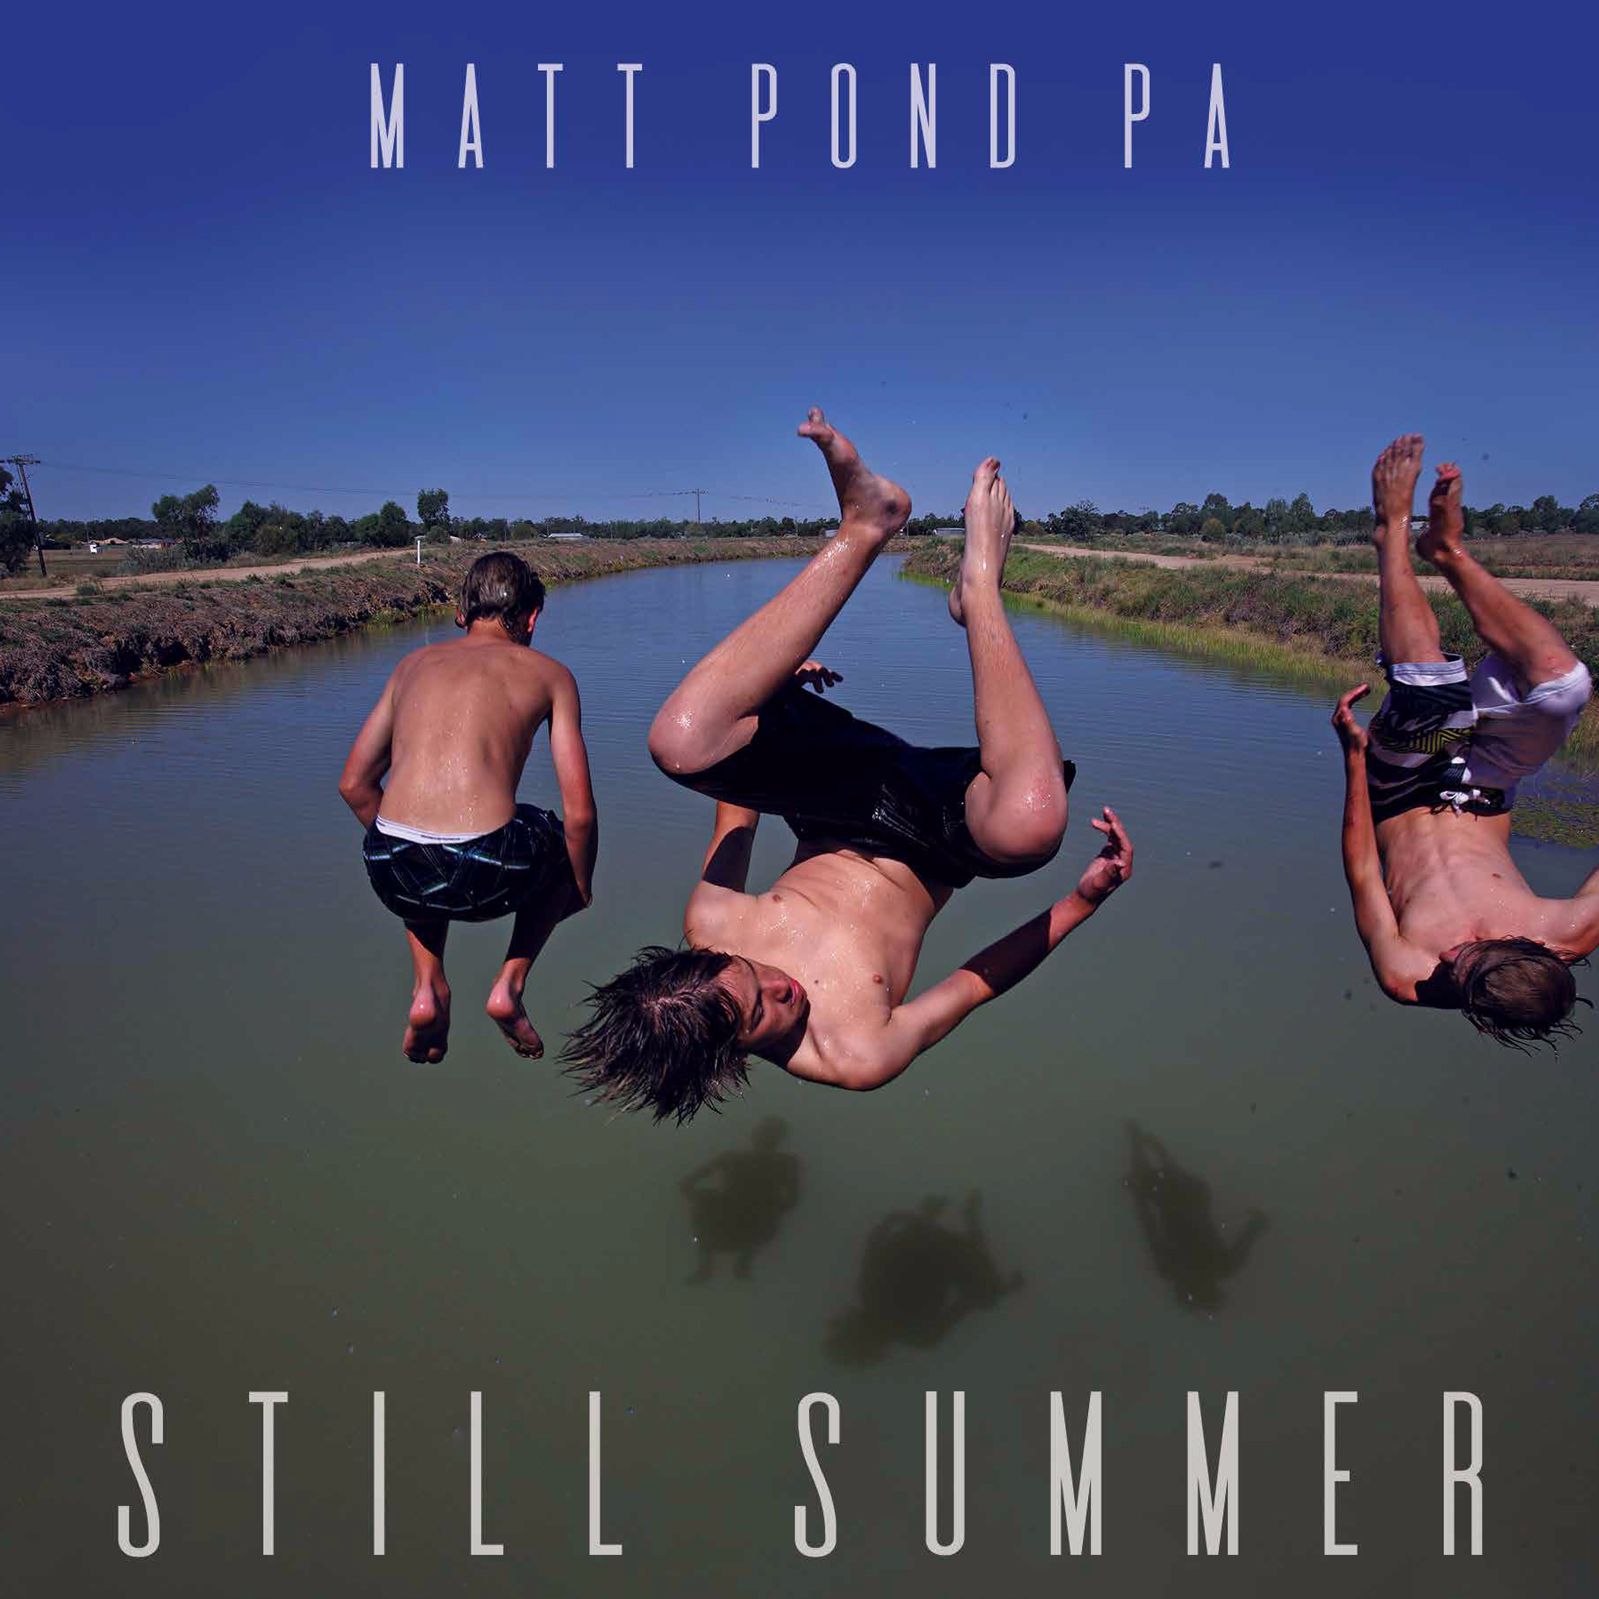 matt pond PA – “Still Summer”